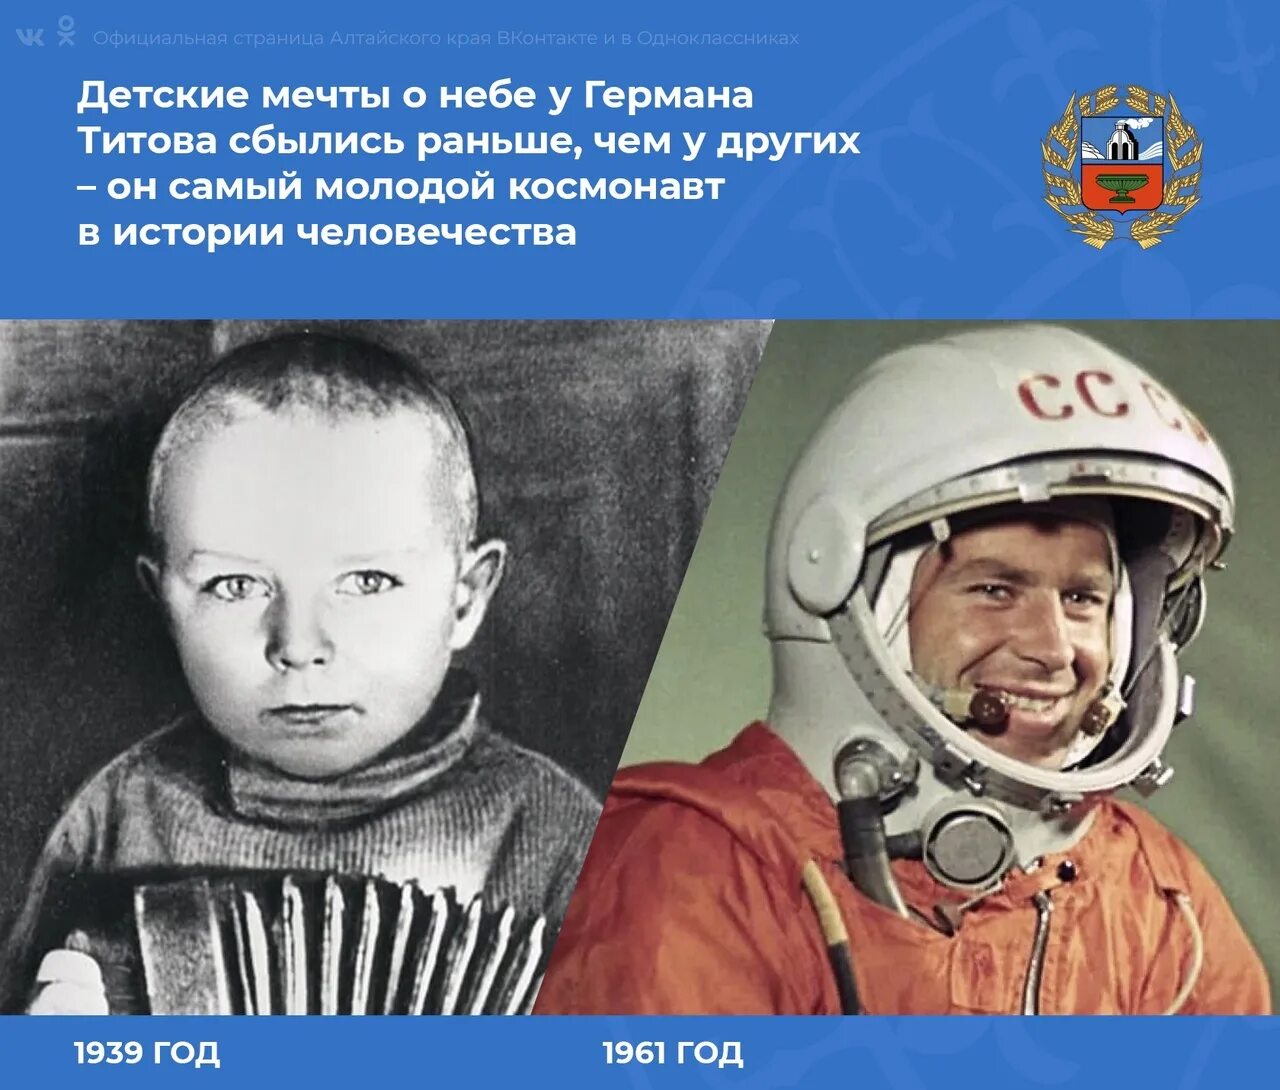 Самый 1 полет в космос. Полет в космос Германа Титова 1961 г.